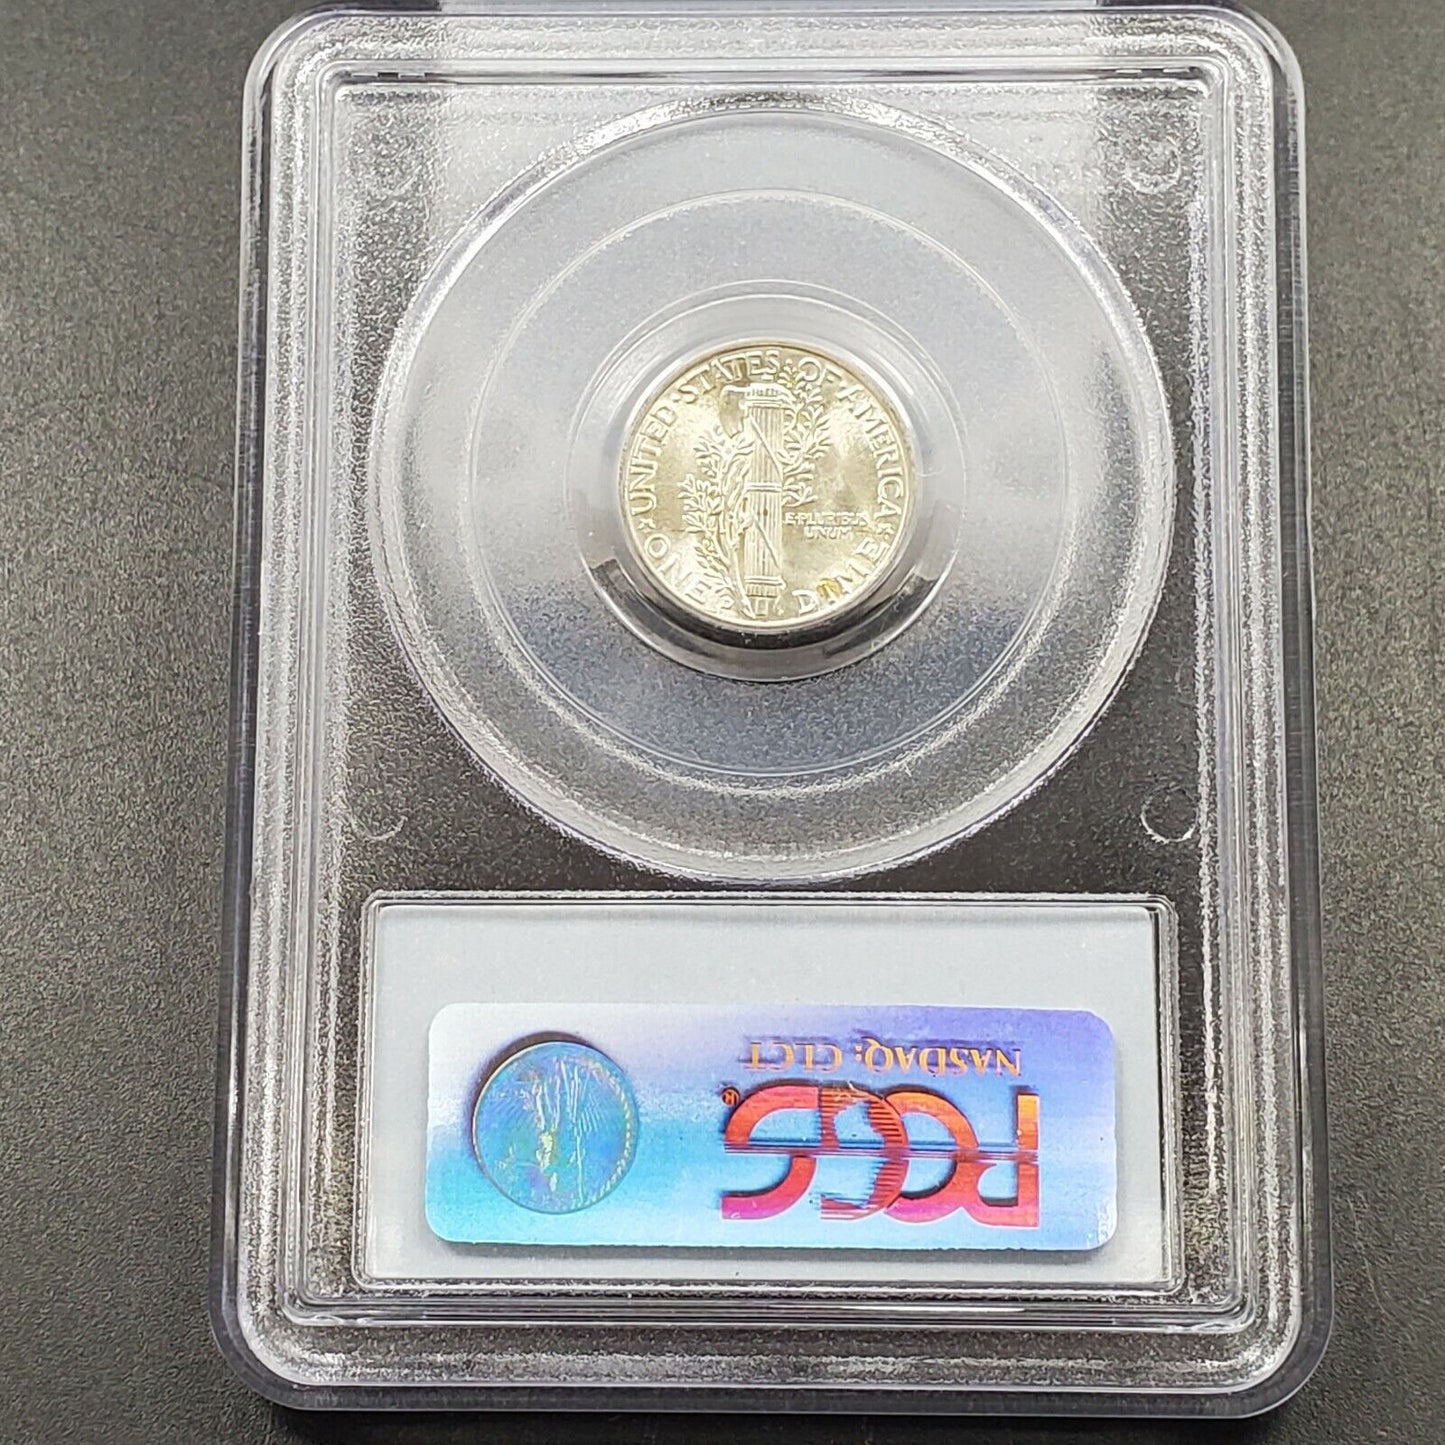 1944 D Mercury Silver Dime Coin PCGS MS65 FB Gem BU FSB Full Band